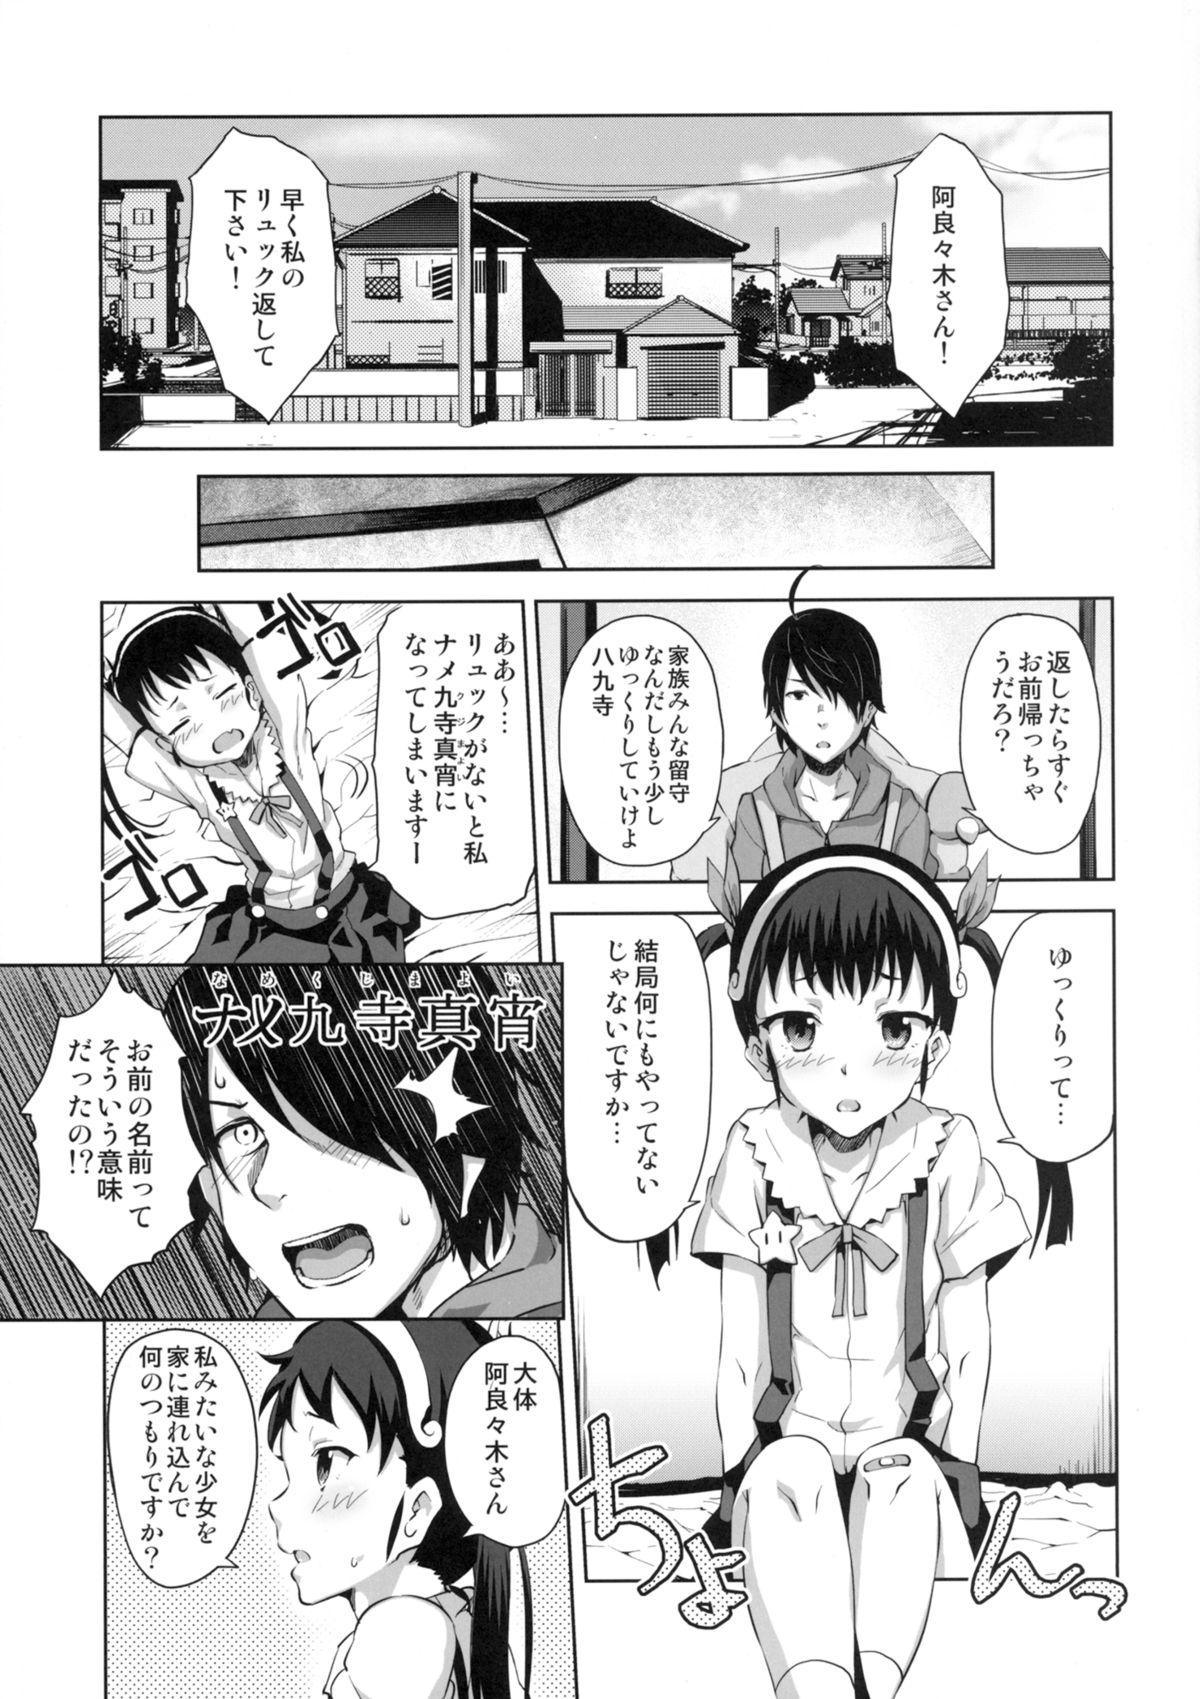 Licking Namekuji Mayoigatari - Bakemonogatari Girls - Page 3